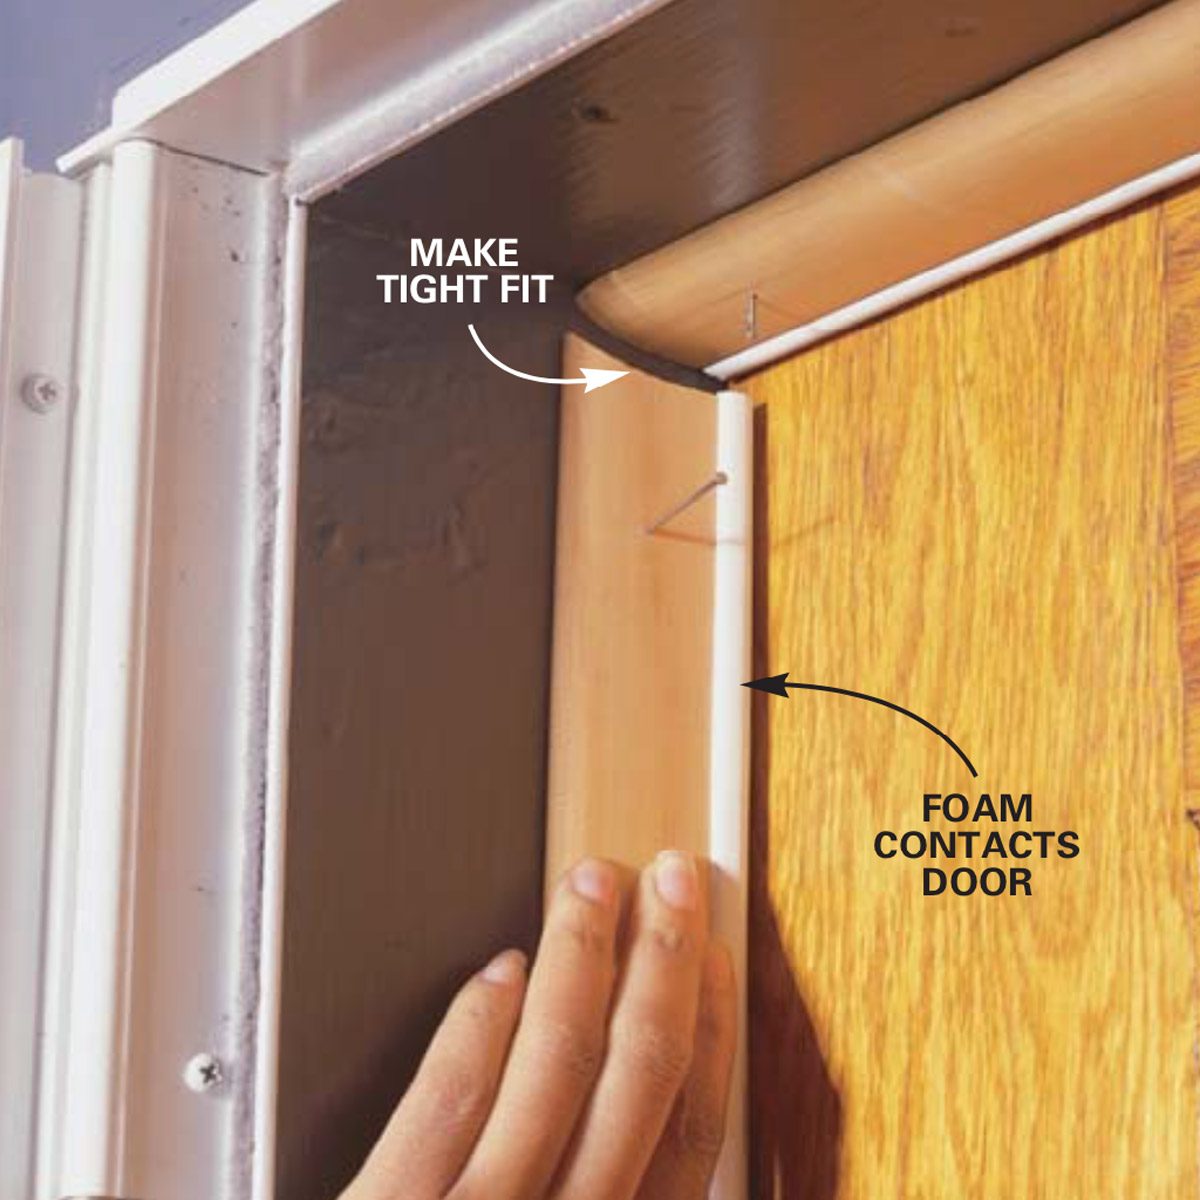 How to Weatherstrip a Door - DIY - PJ Fitzpatrick